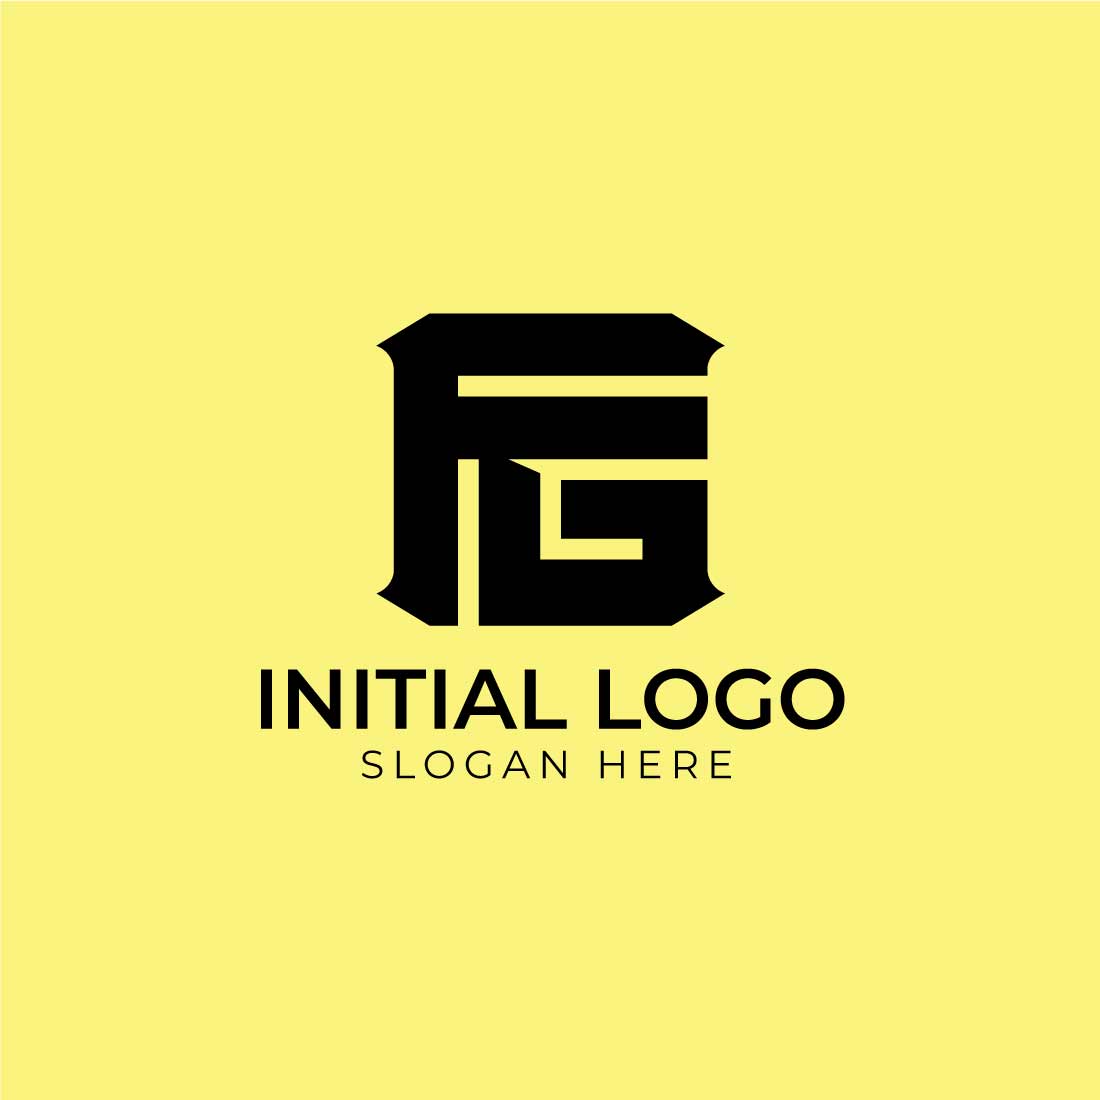 Professional Initial FG logo and GF logo design preview image.